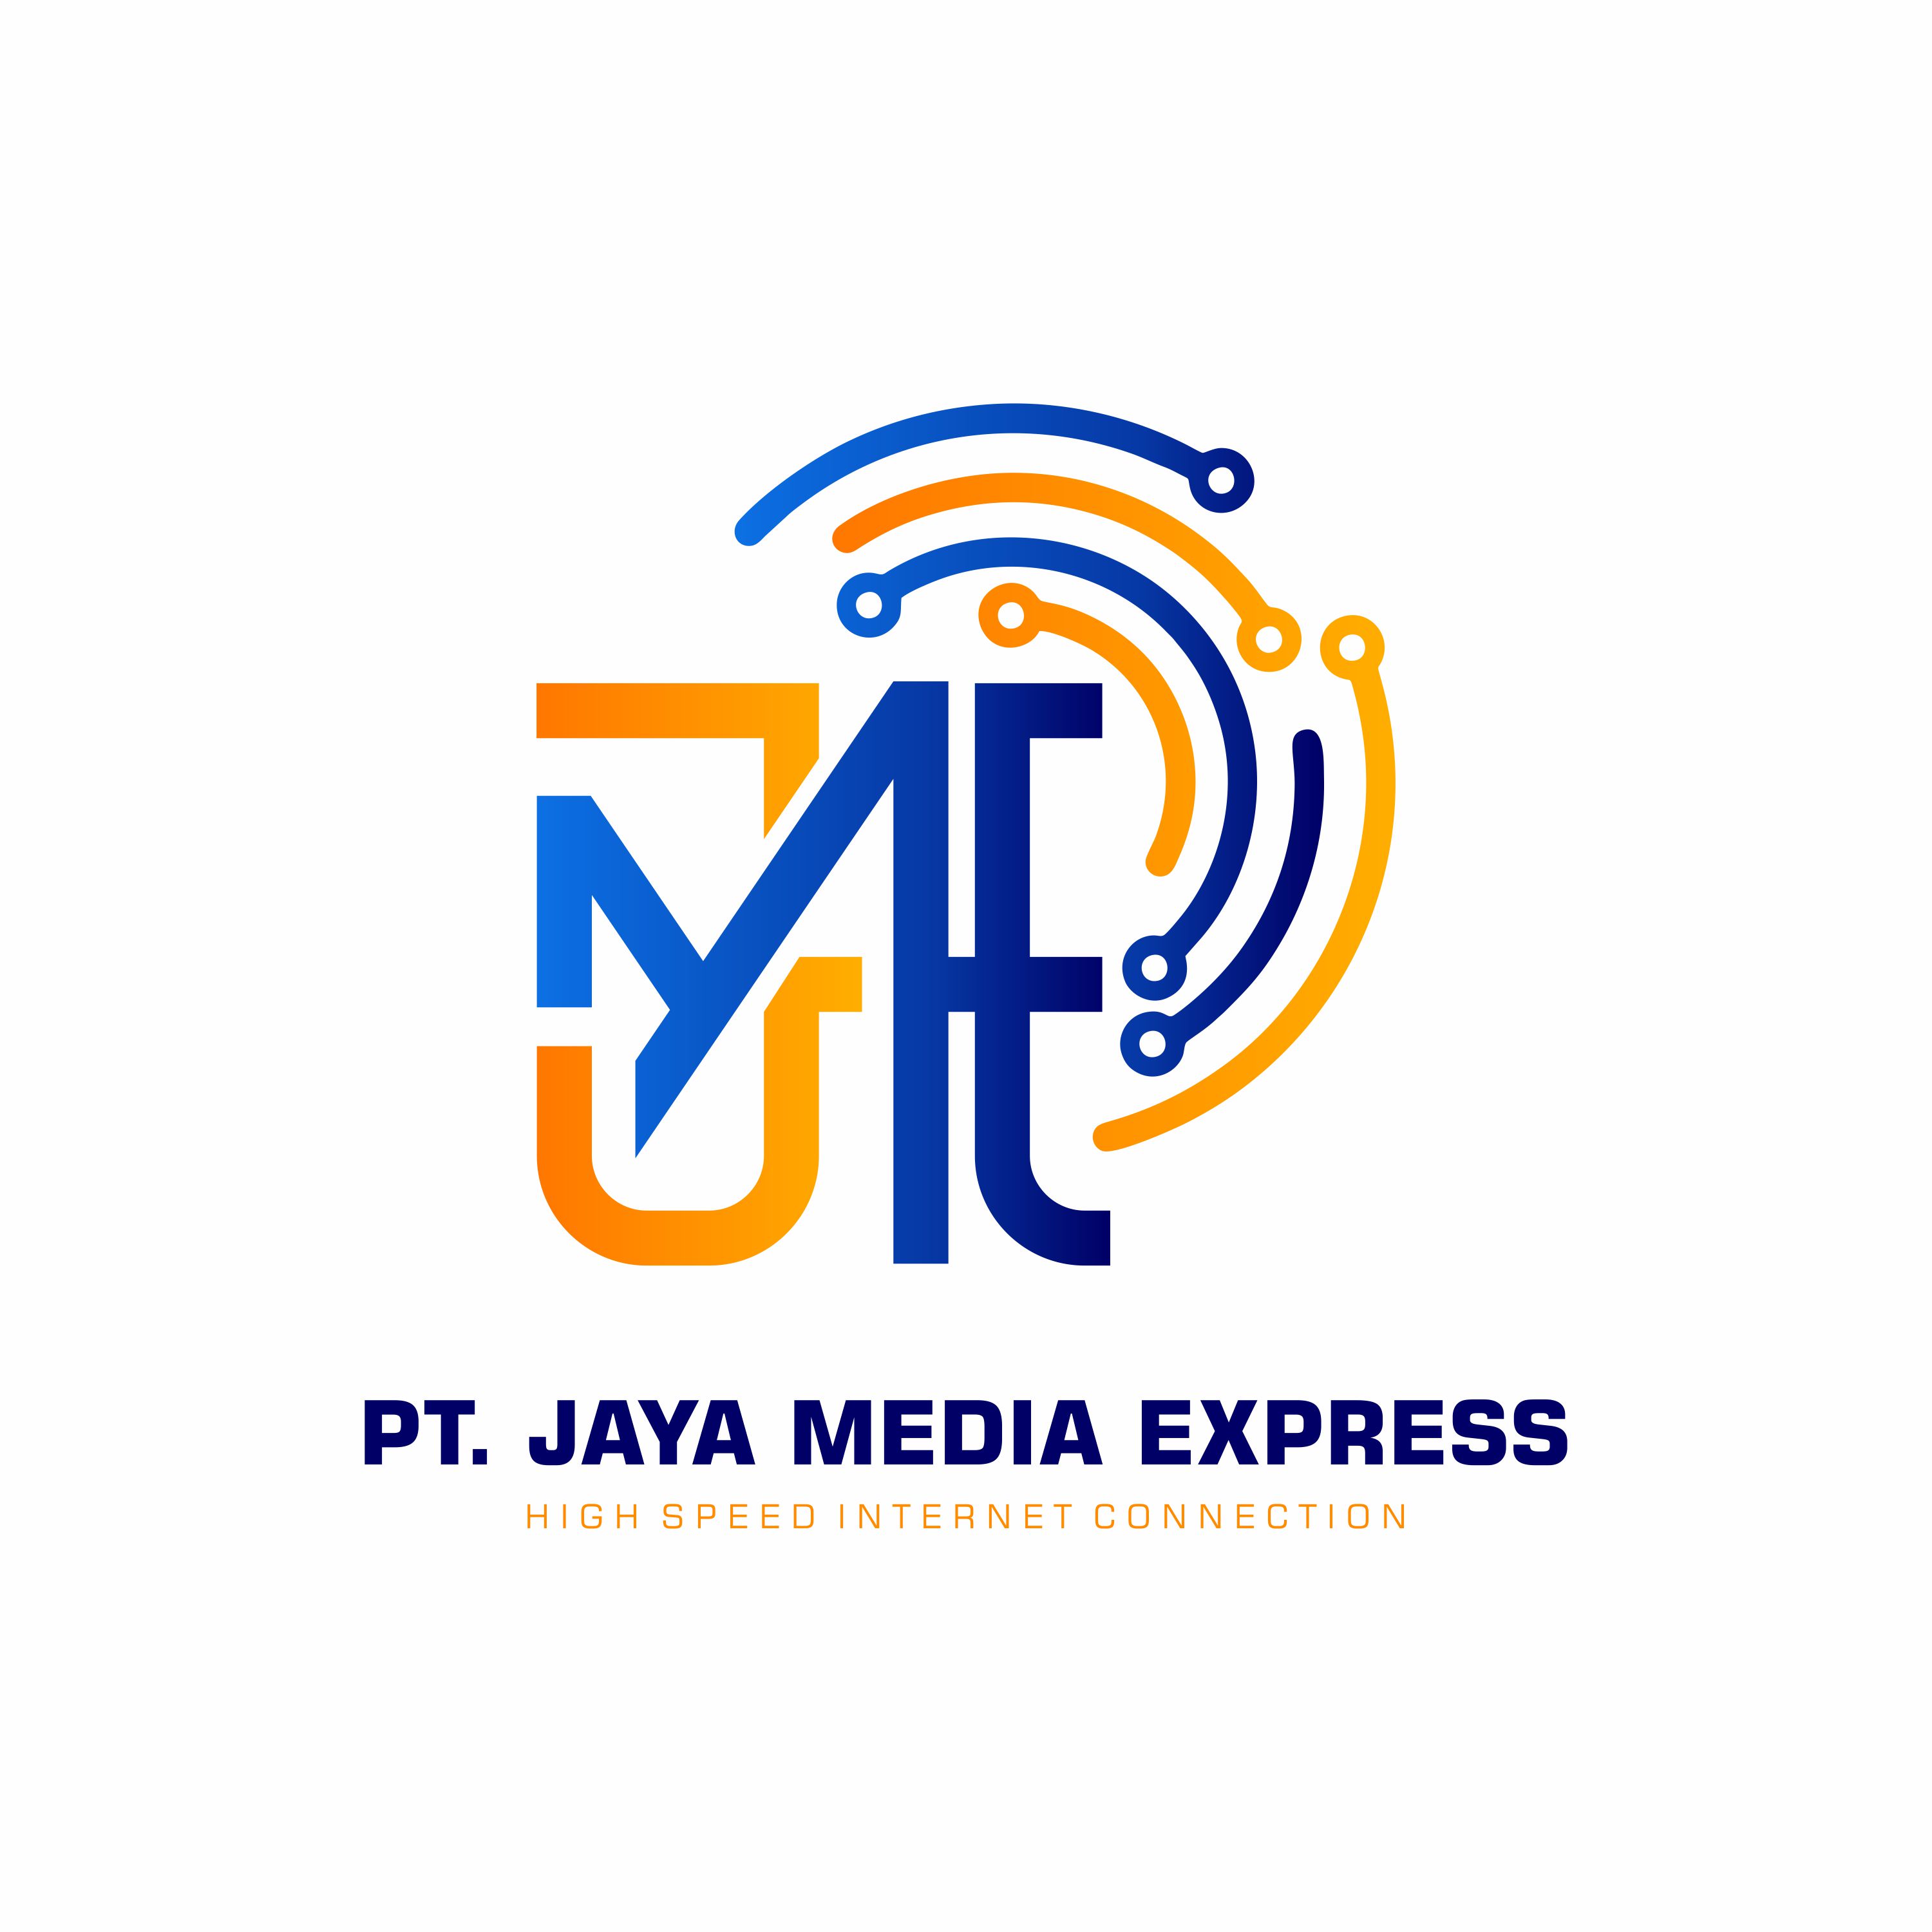 PT. JAYA MEDIA EXPRESS